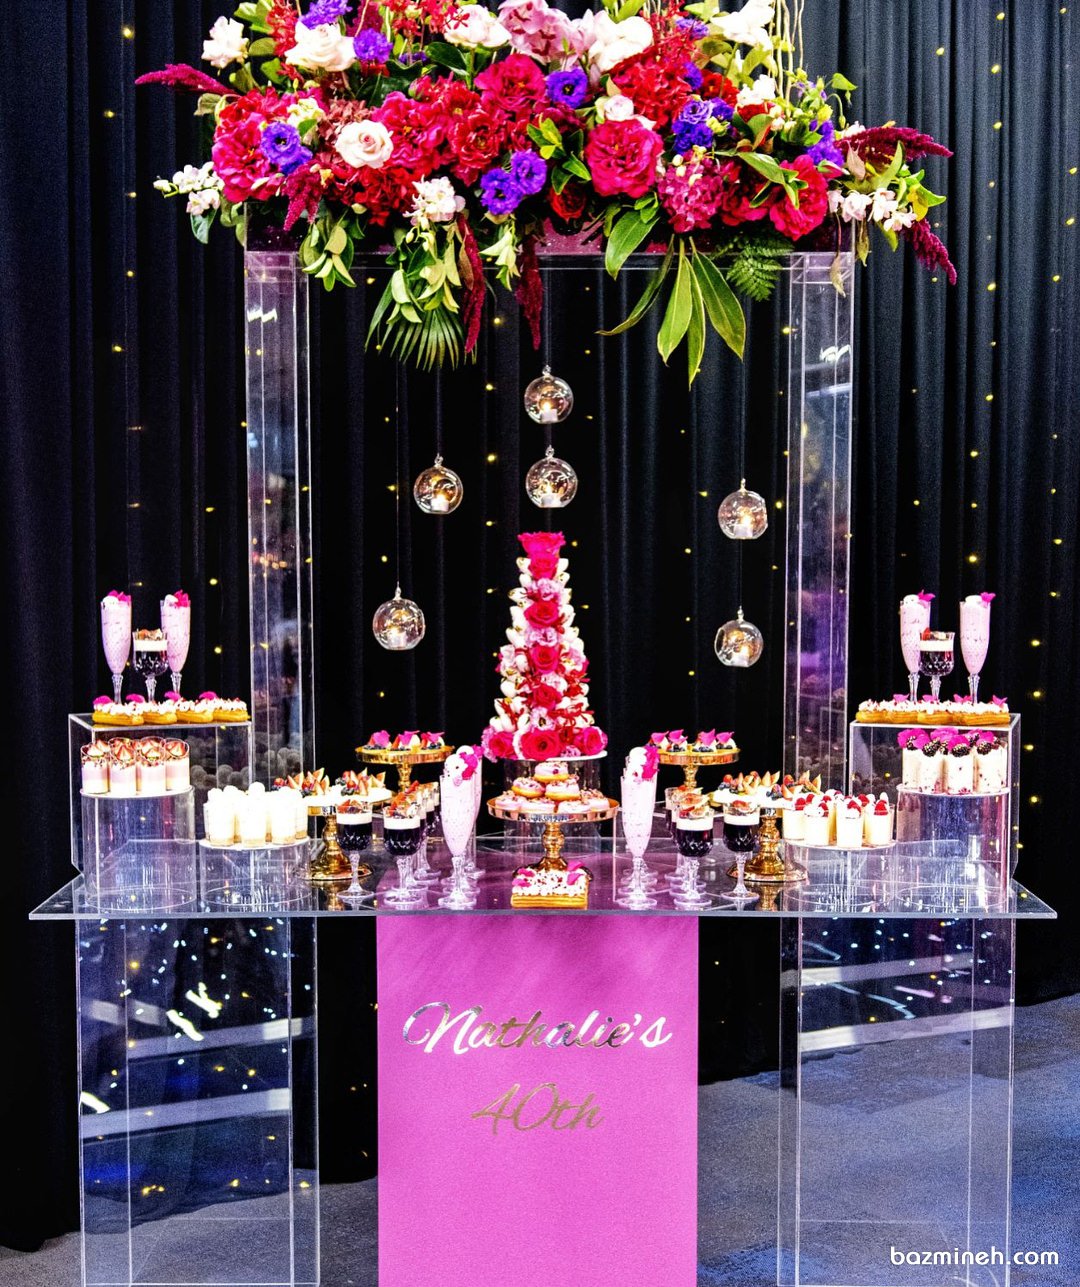 میز آرایی زیبای میز پذیرایی جشن تولد یا نامزدی با تم صورتی مشکی همراه با گل آرایی